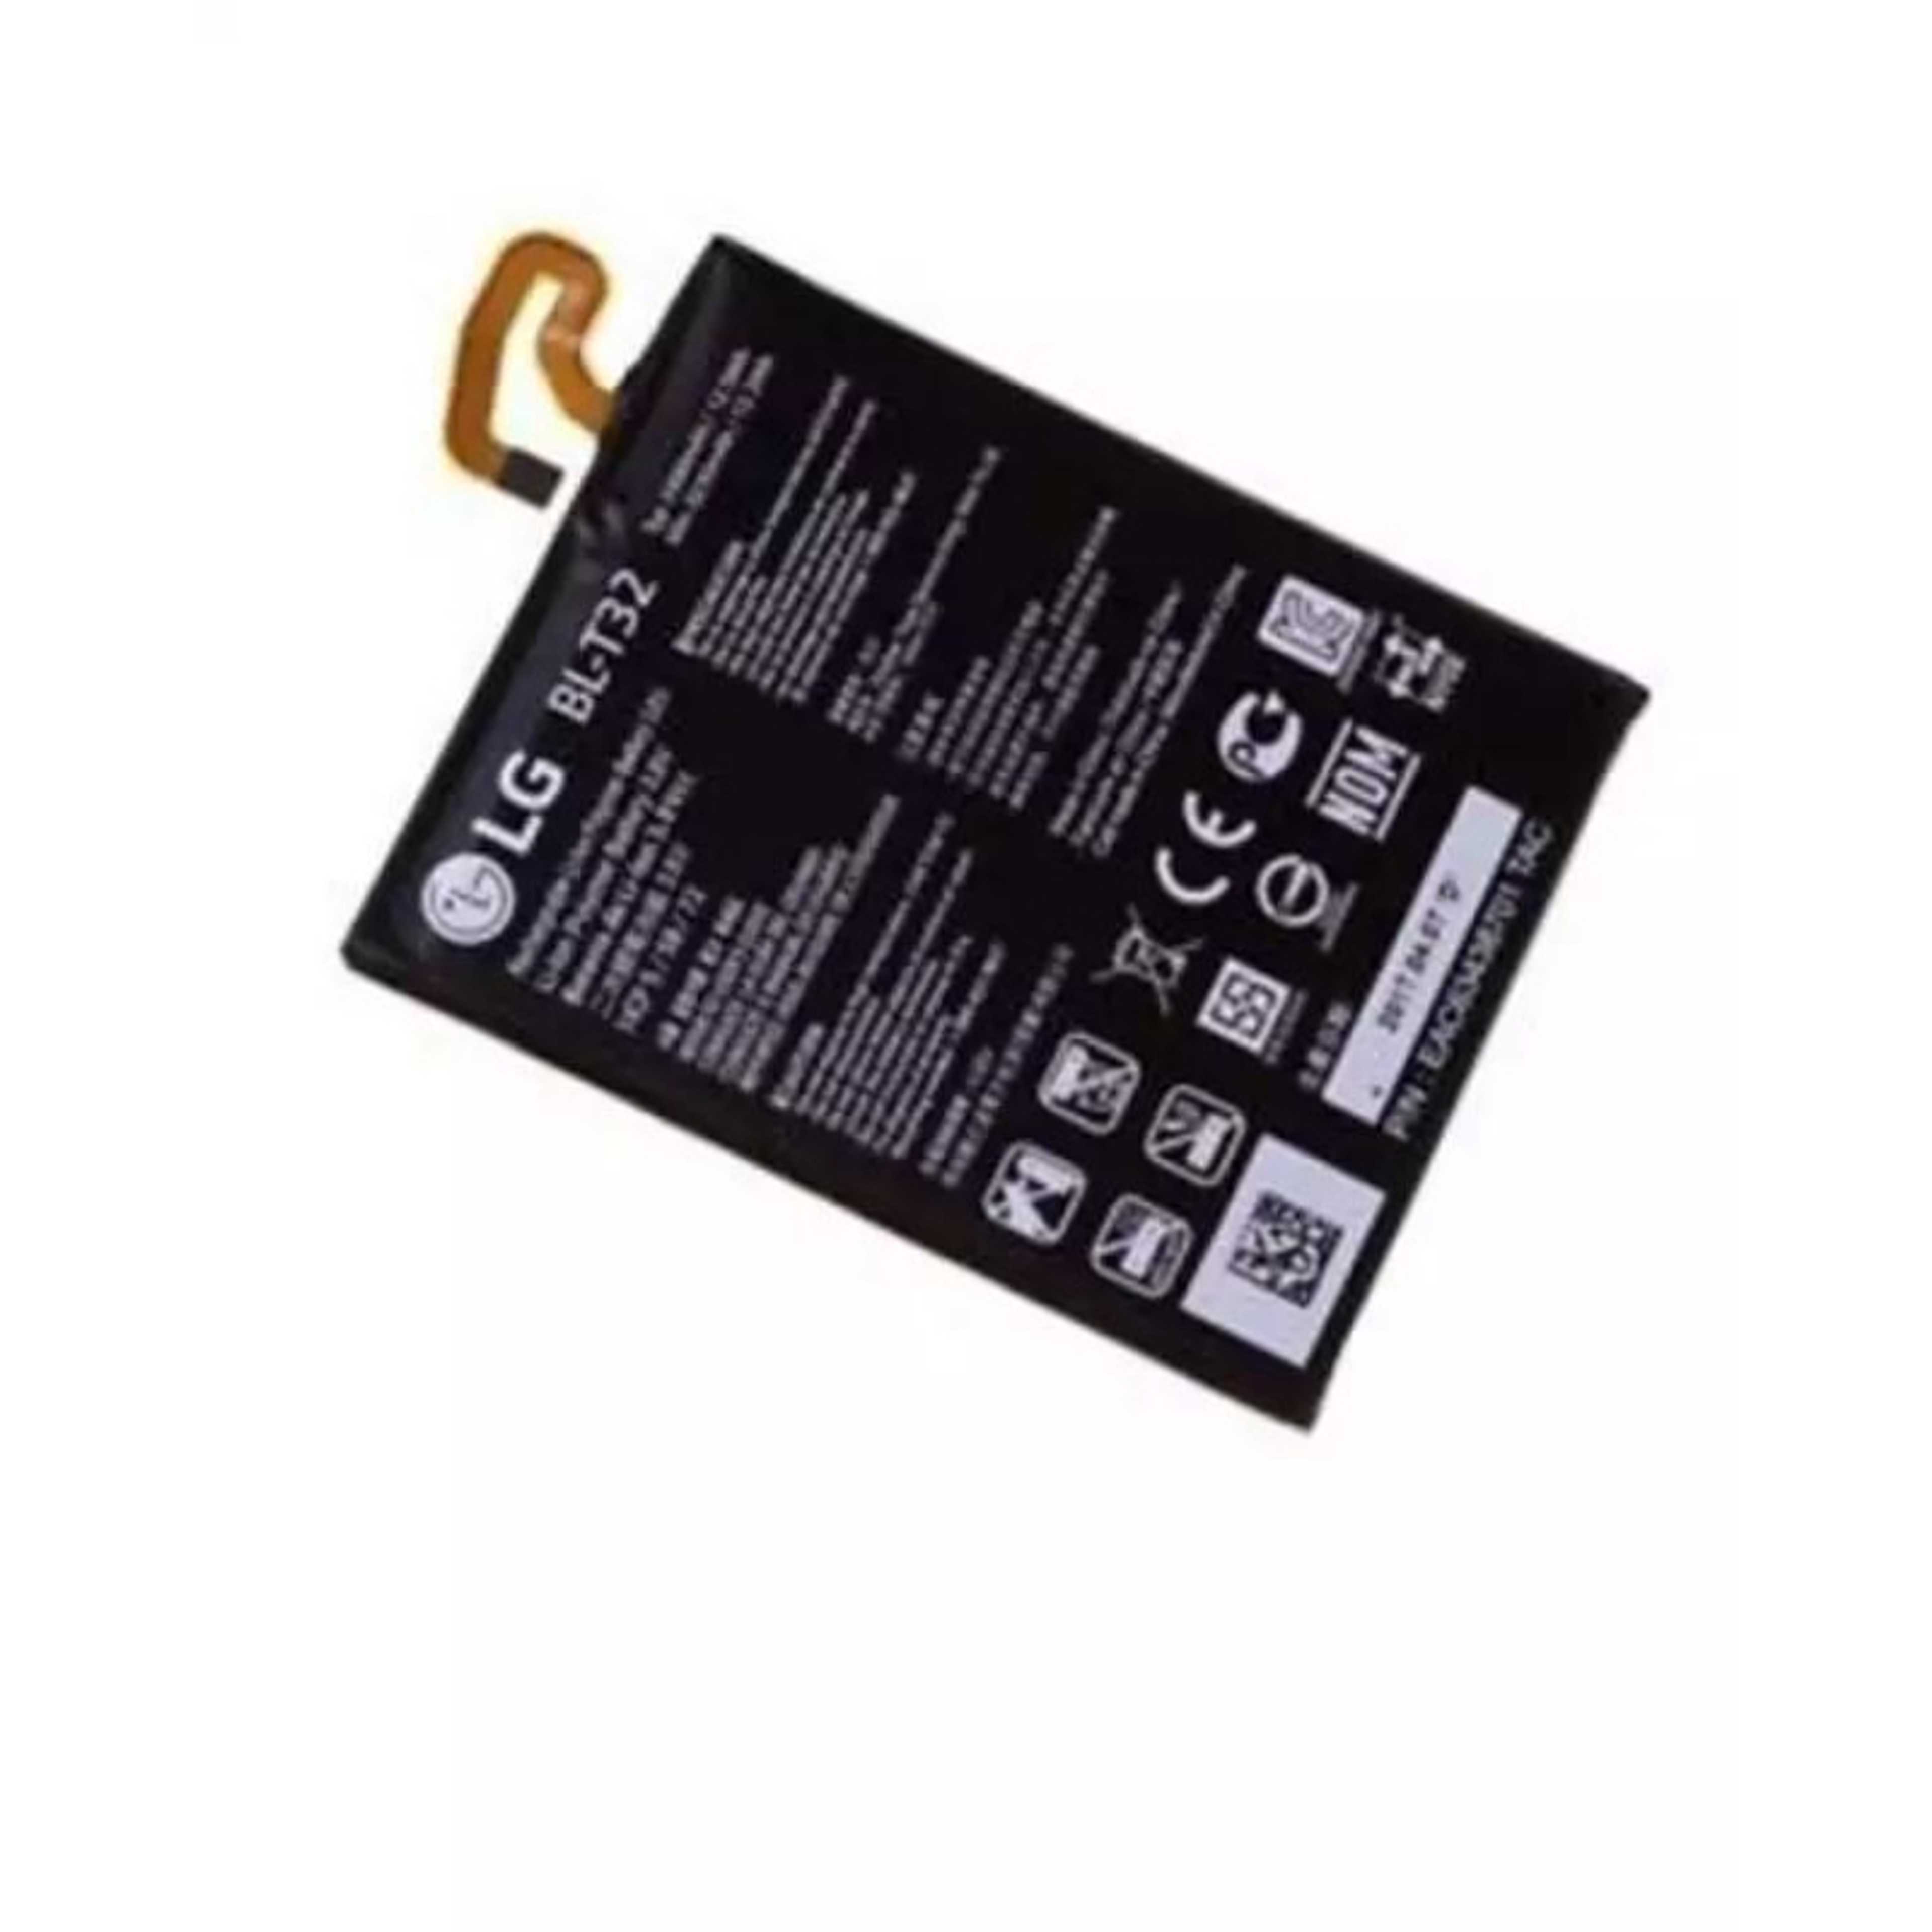 LG G6 BL-T32 Battery H870 H871 H872 LS993 VS998 3300mAh Original Mobile Phone